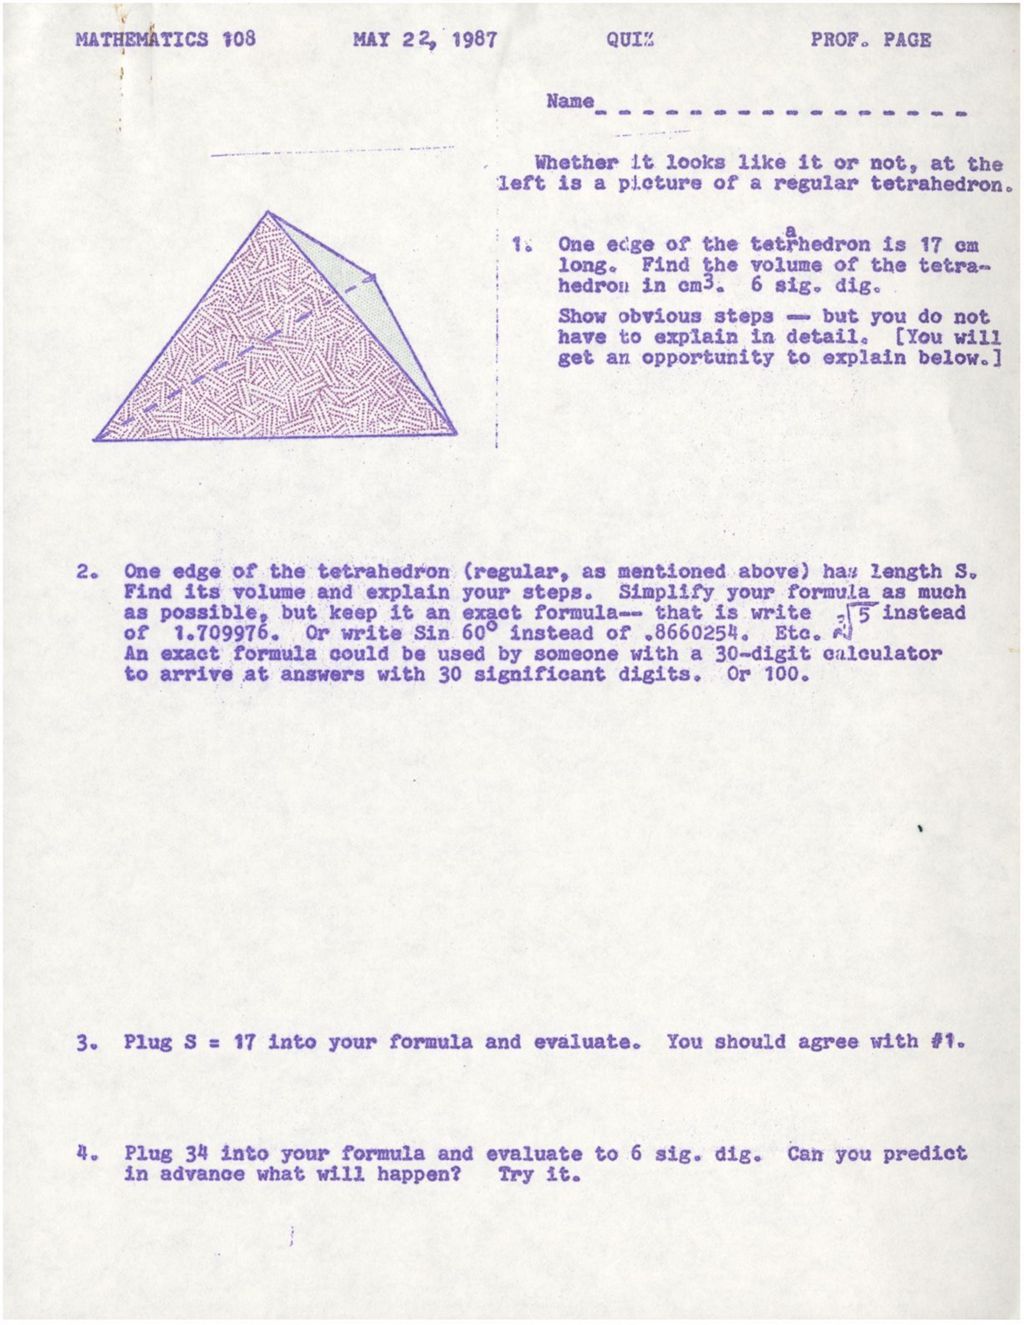 Math 108 A regular tetrahedron problem/ Answer Key